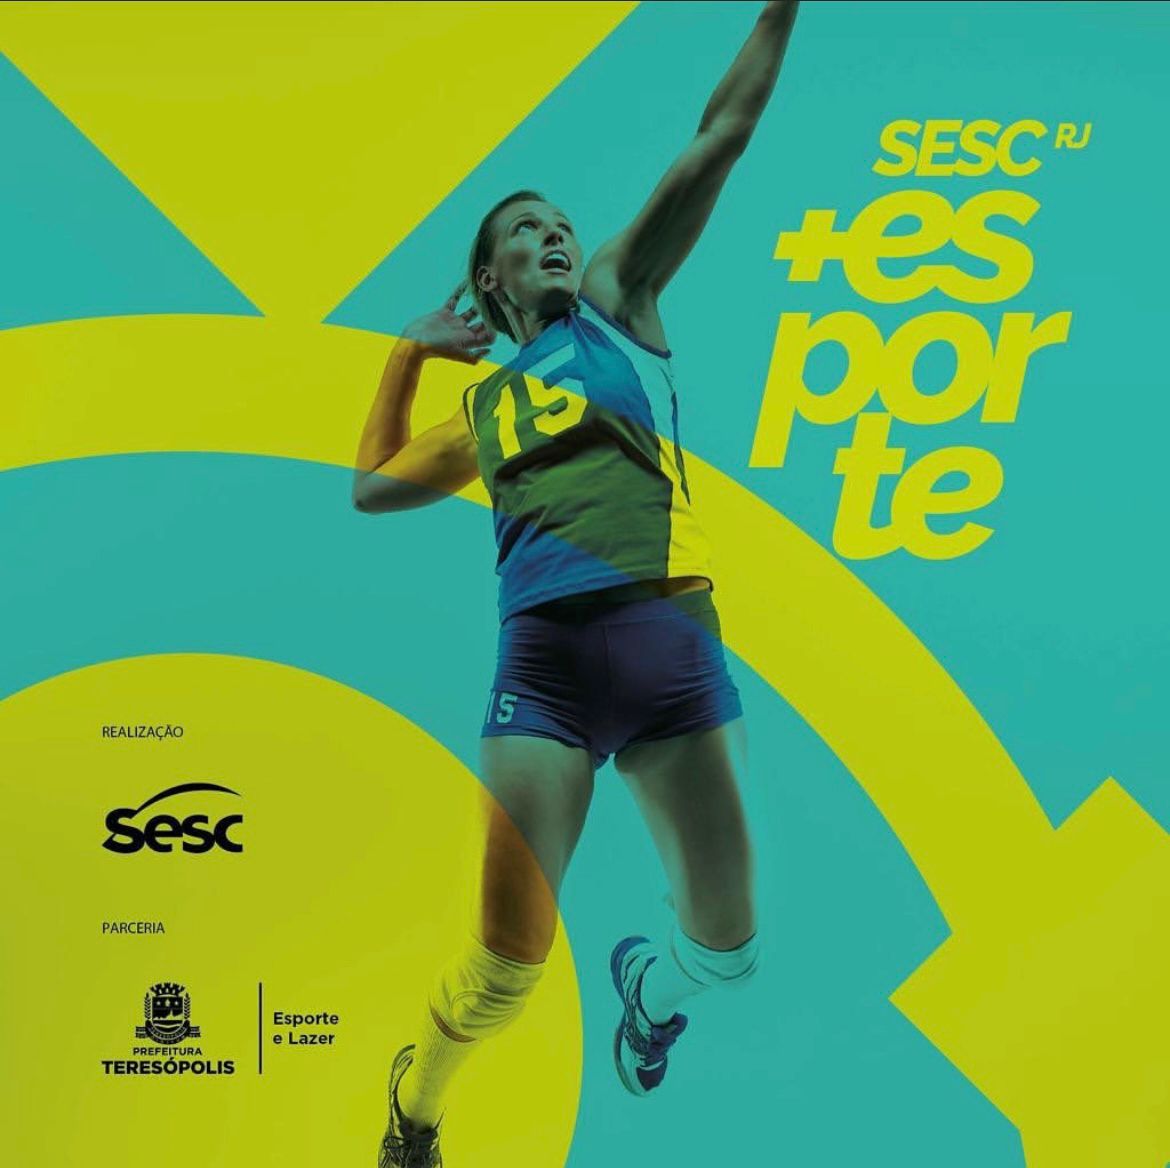 You are currently viewing Inscrições abertas para o Projeto SESC + Esporte na modalidade do vôlei em Teresópolis, no Ginásio Pedrão